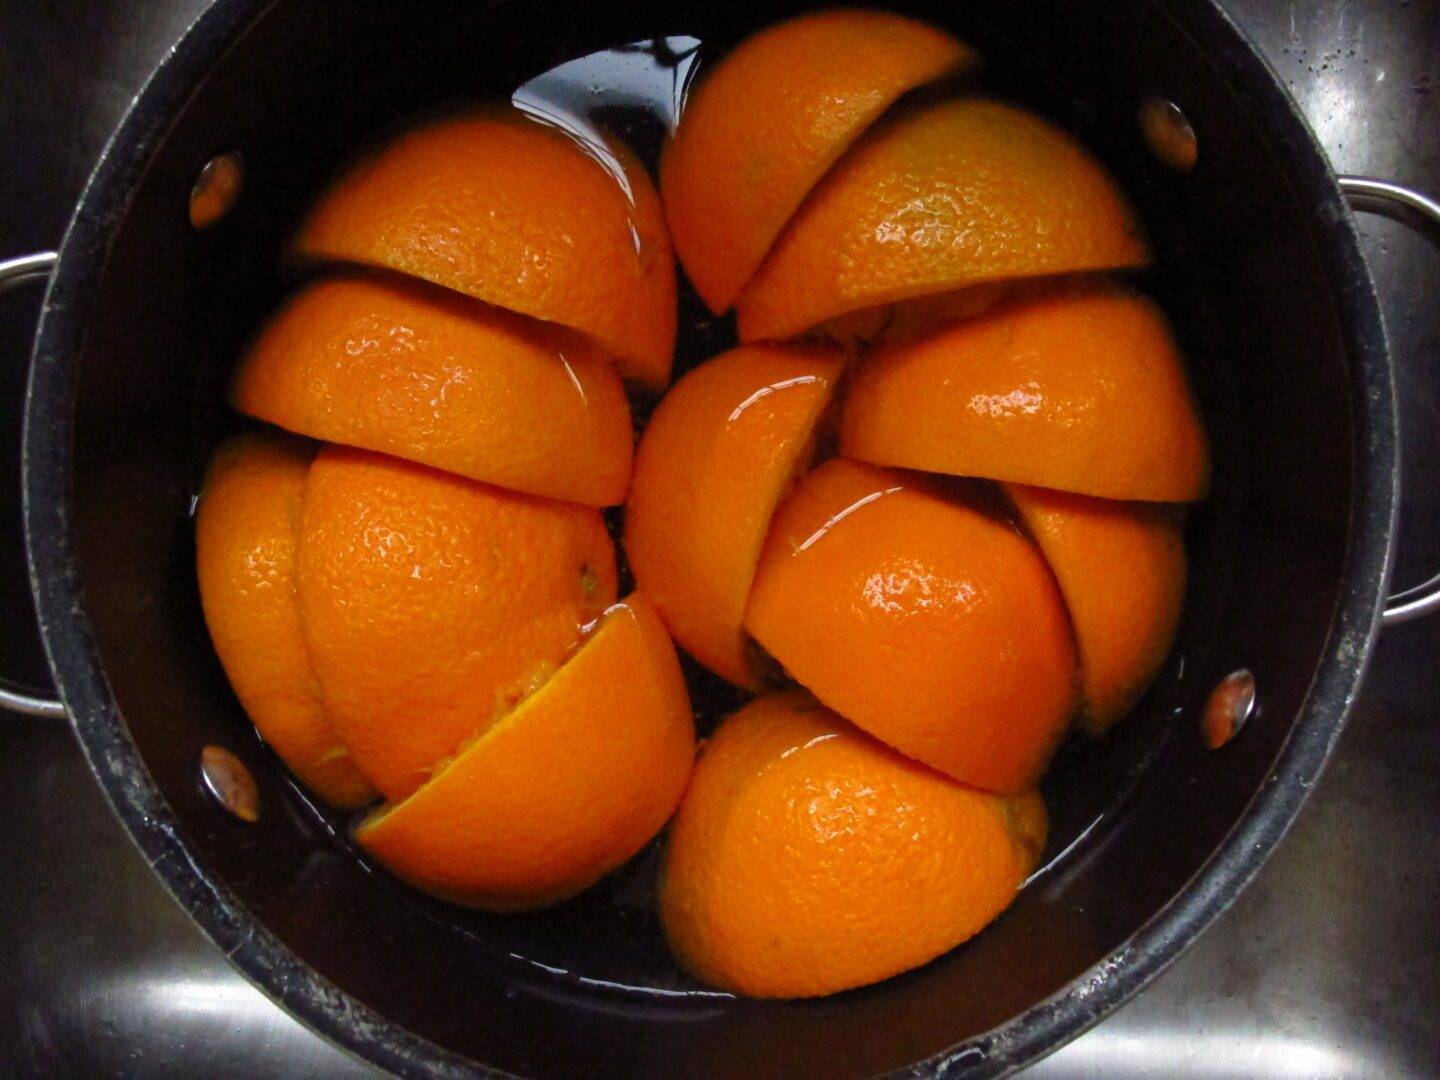 Sliced oranges in a pot.